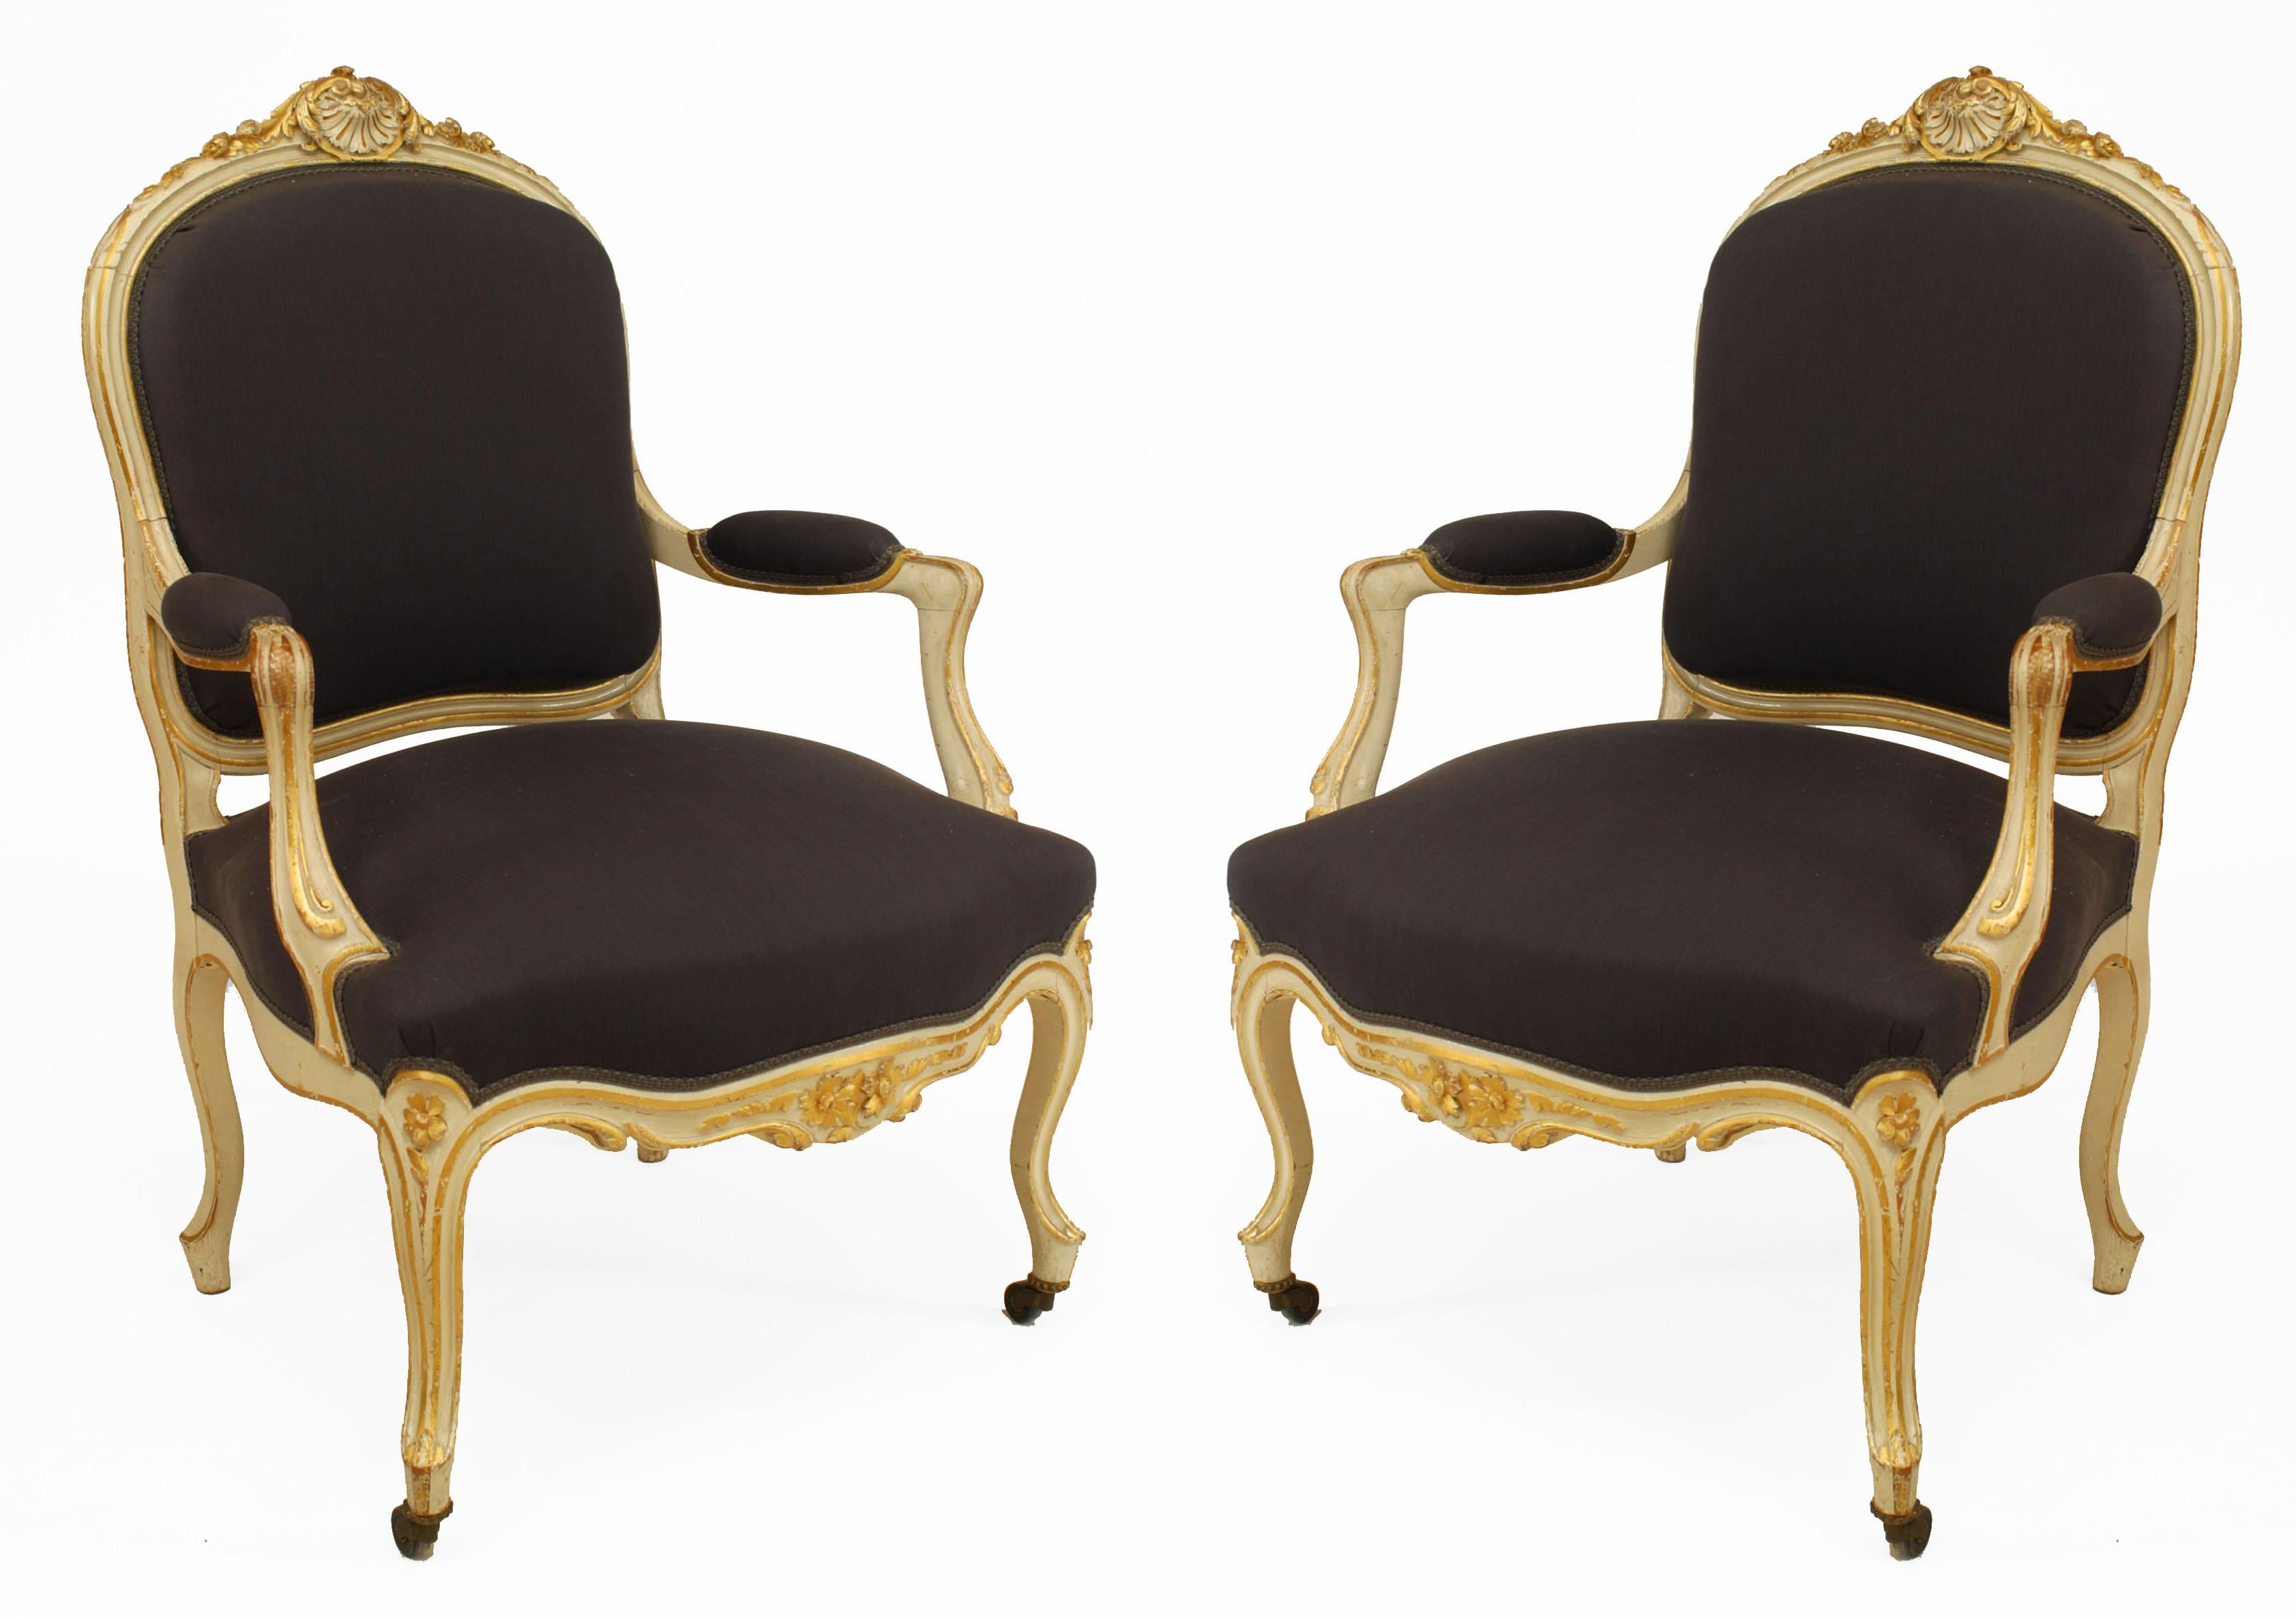 Satz von 4 offenen Sesseln im französischen Louis-XV-Stil (19. Jh.), weiß und vergoldet, mit gepolsterter Sitzfläche und Rückenlehne mit geschnitzter Rückenlehne, 2 mit dunkelvioletter Polsterung und 2 mit erdgrauer Polsterung (siehe auch: